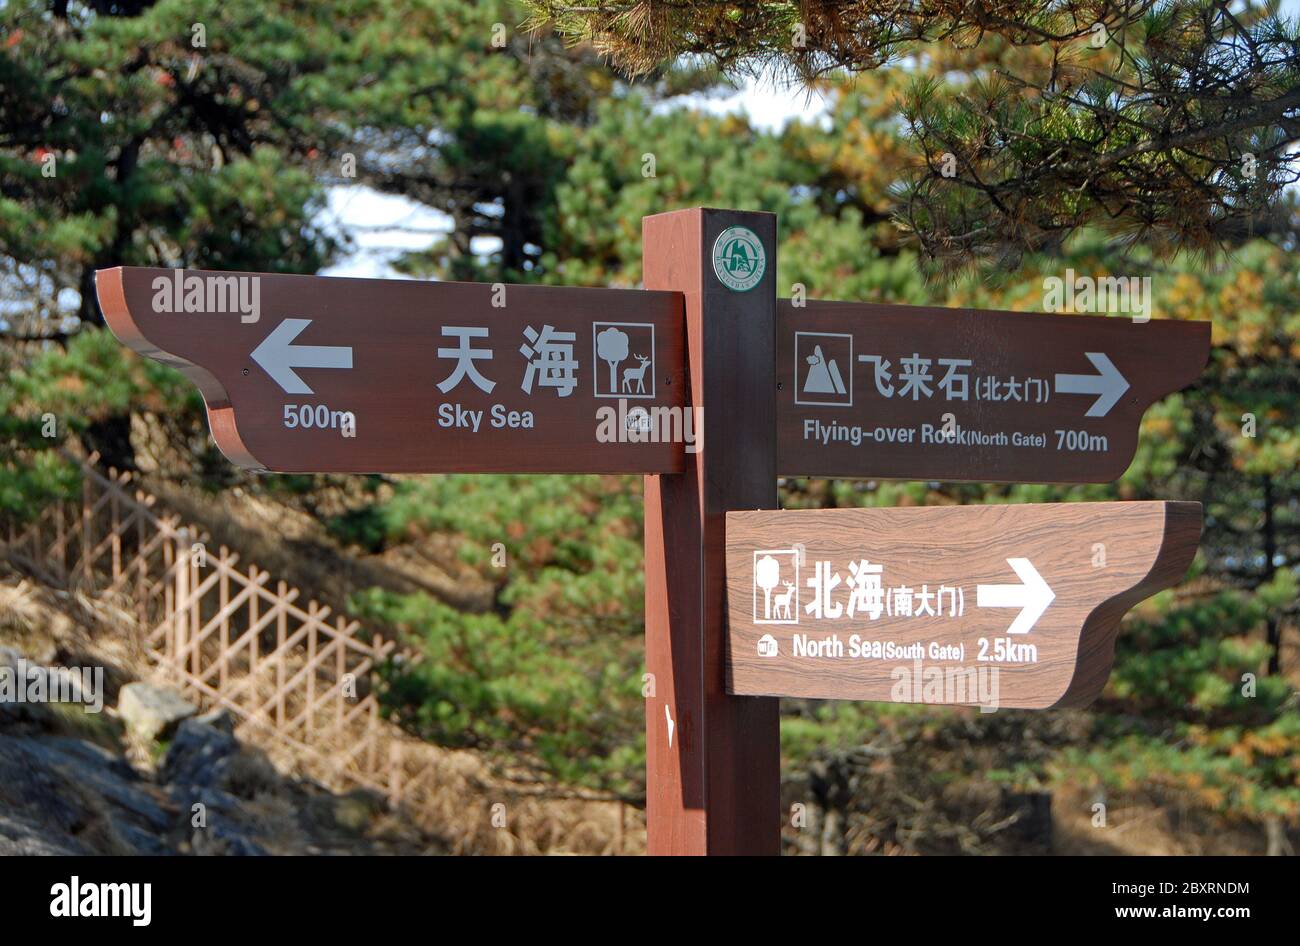 Berg Huangshan in der Provinz Anhui, China. Wegweiser auf Helligkeits-Top zeigt Wegbeschreibungen und Entfernungen zu anderen Sehenswürdigkeiten. Stockfoto